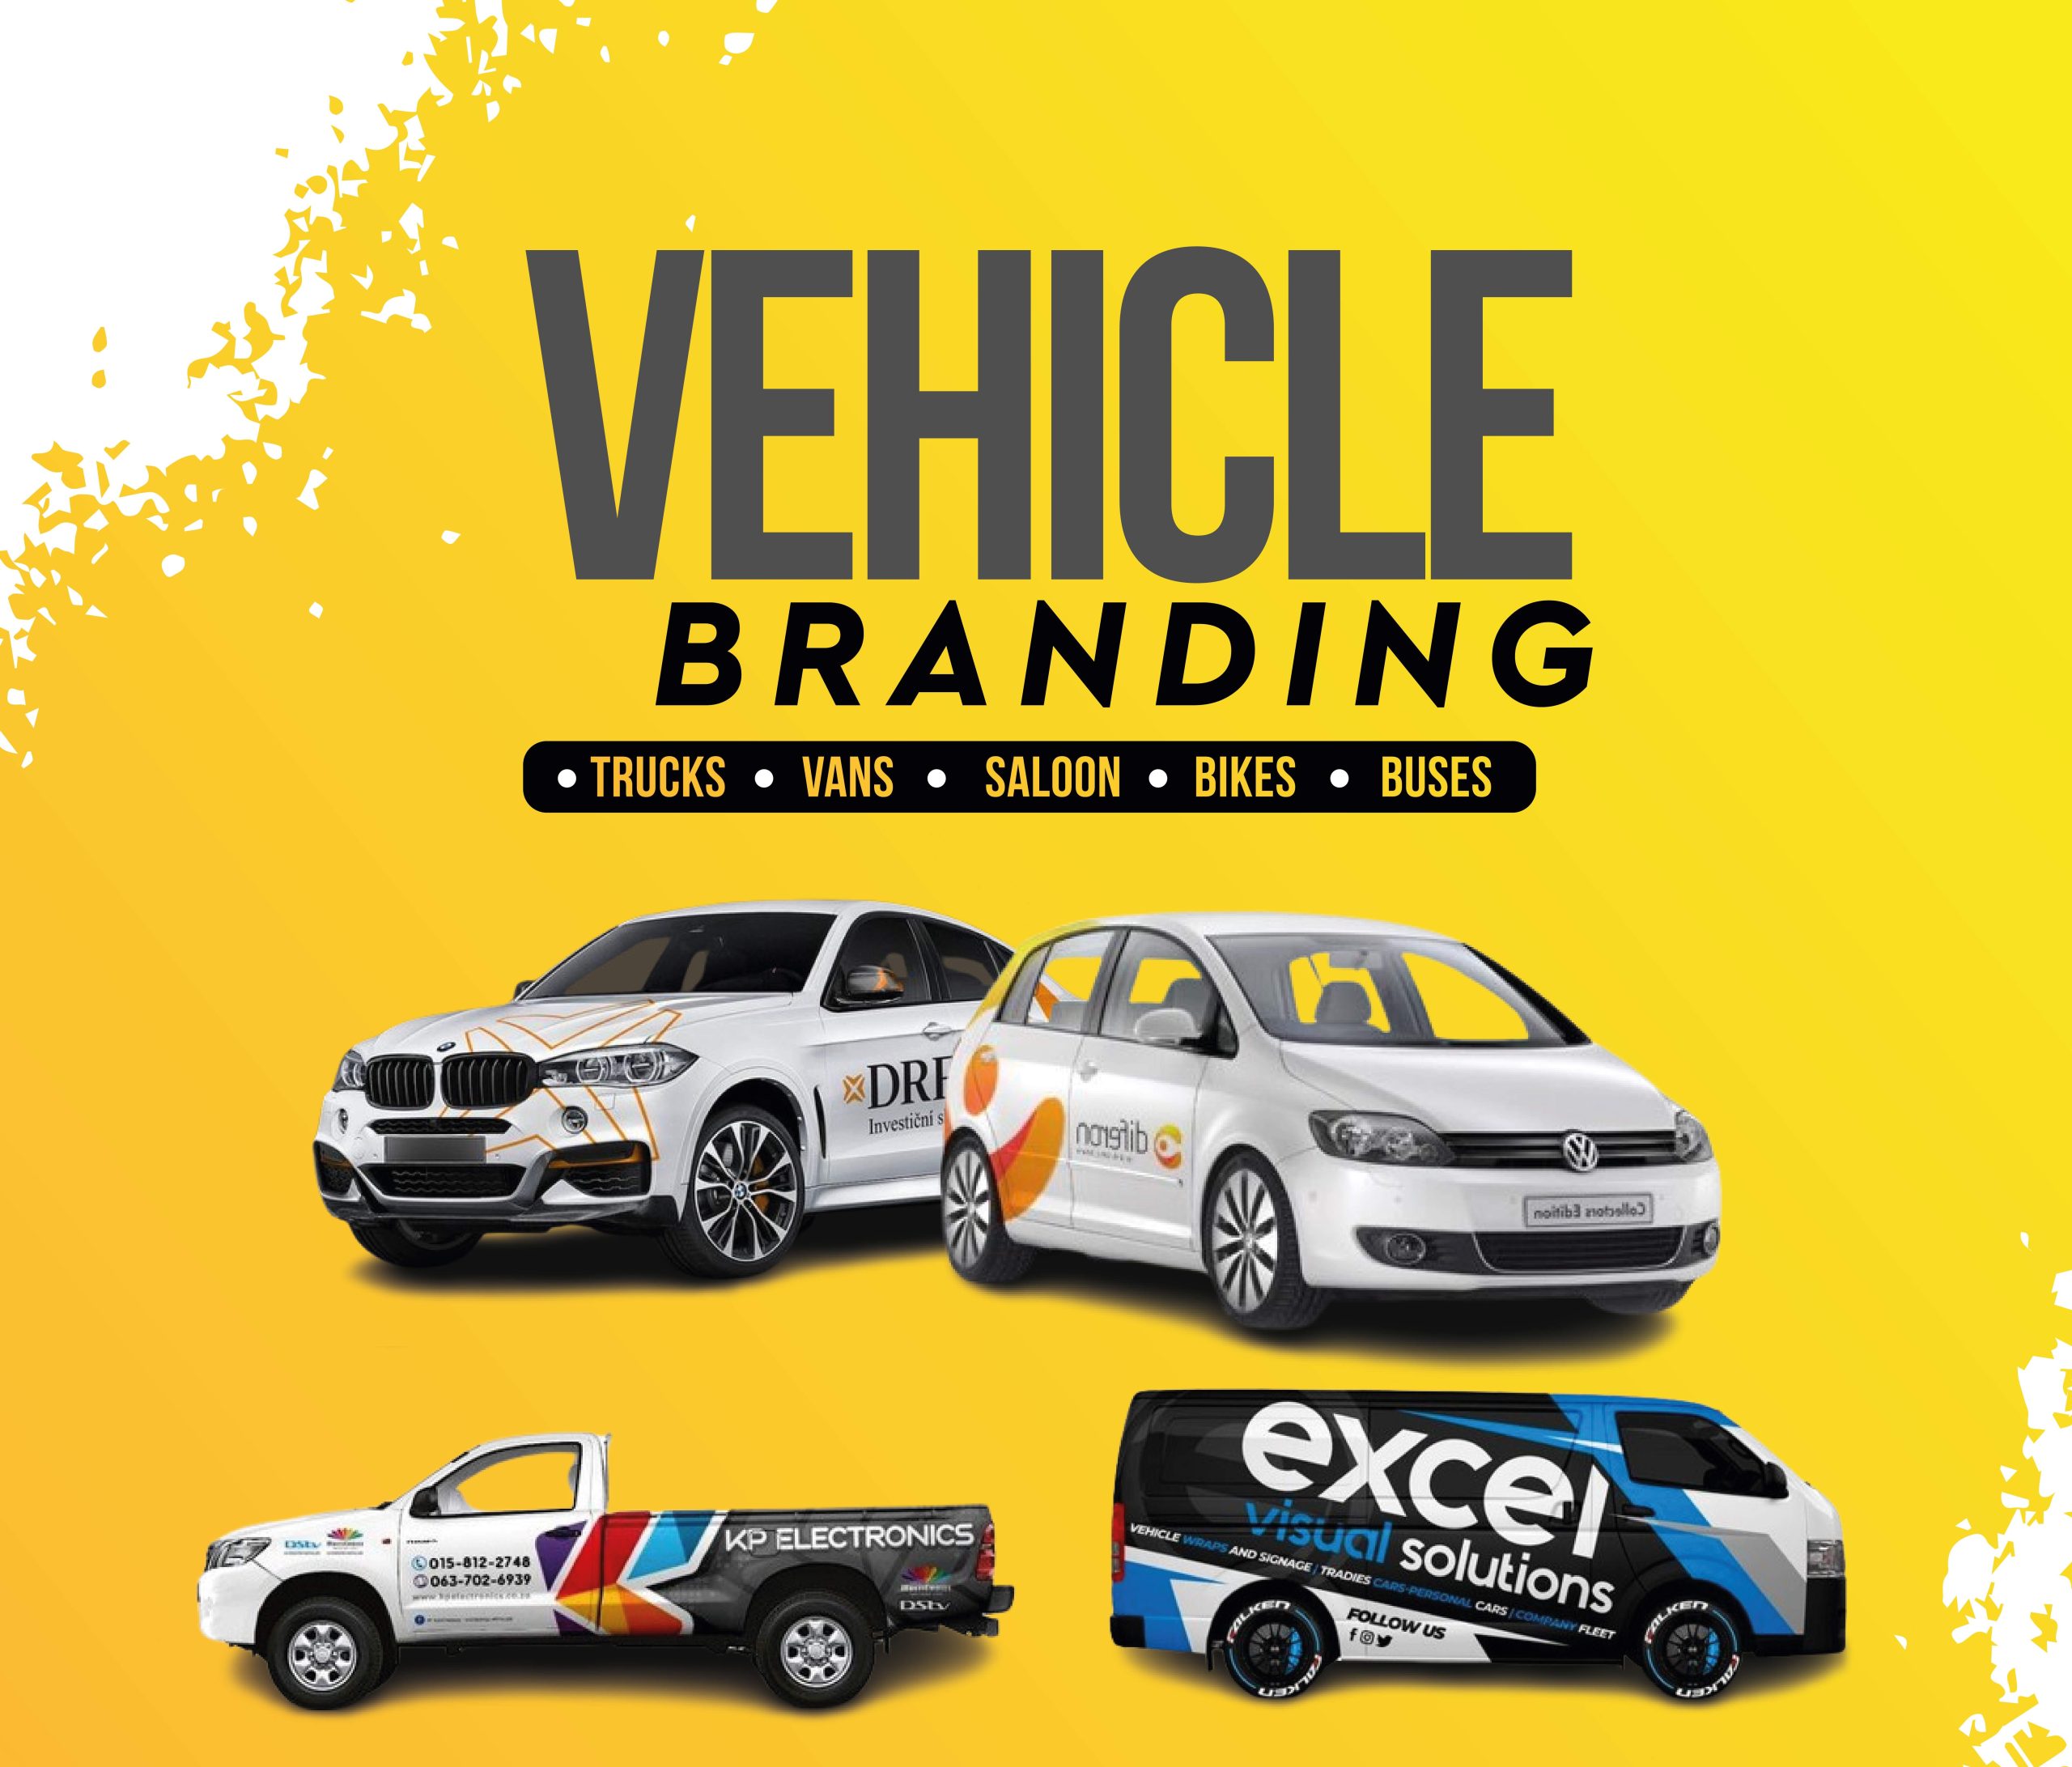 Vehicle branding